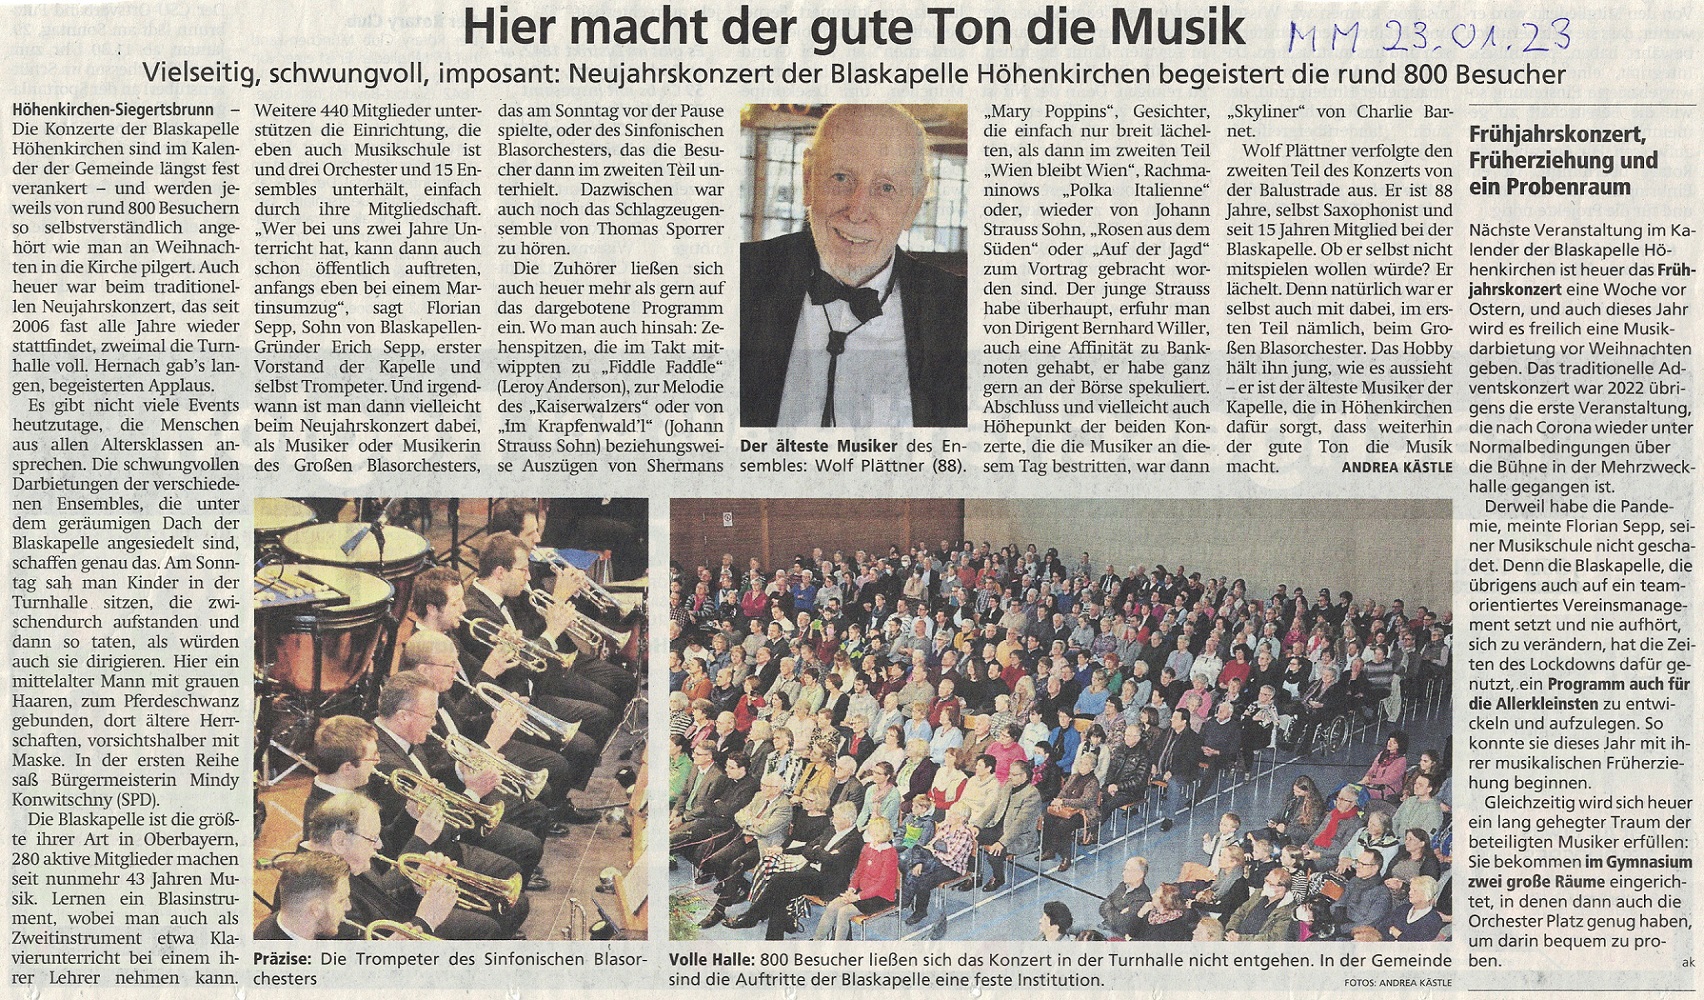 Artikel Neujahrskonzert Münchner Merkur 23